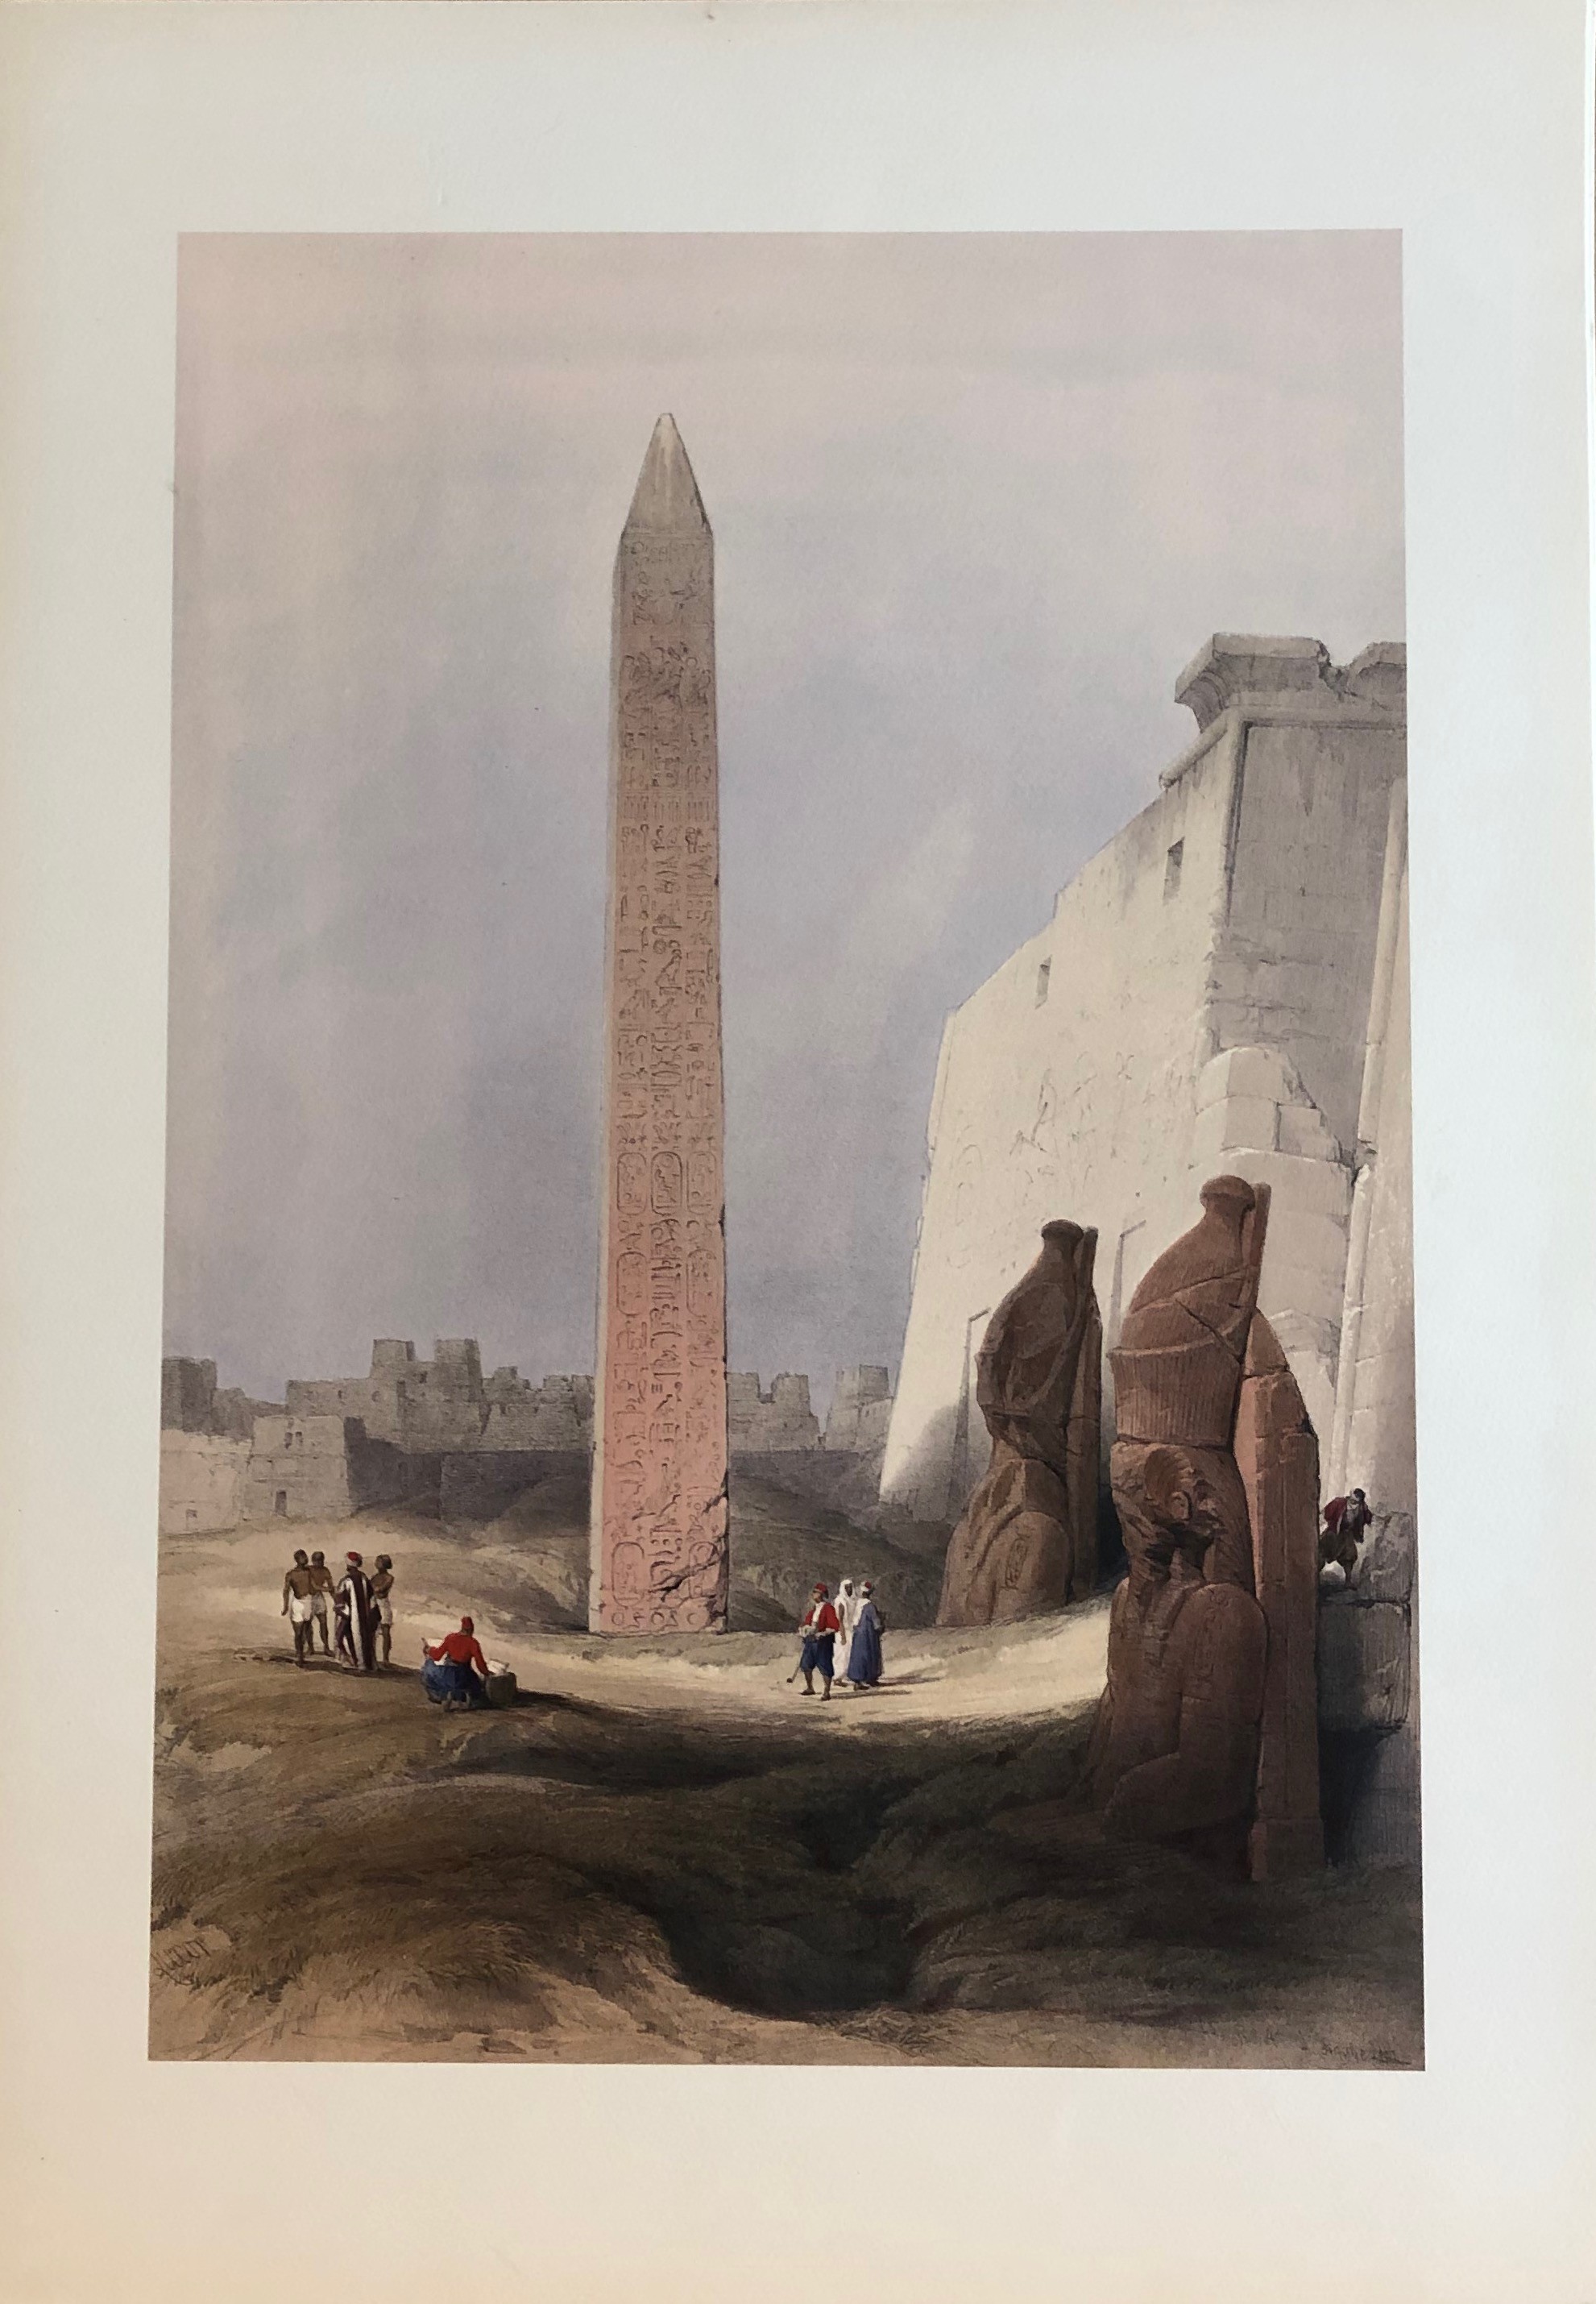 The Obelisk at Luxor